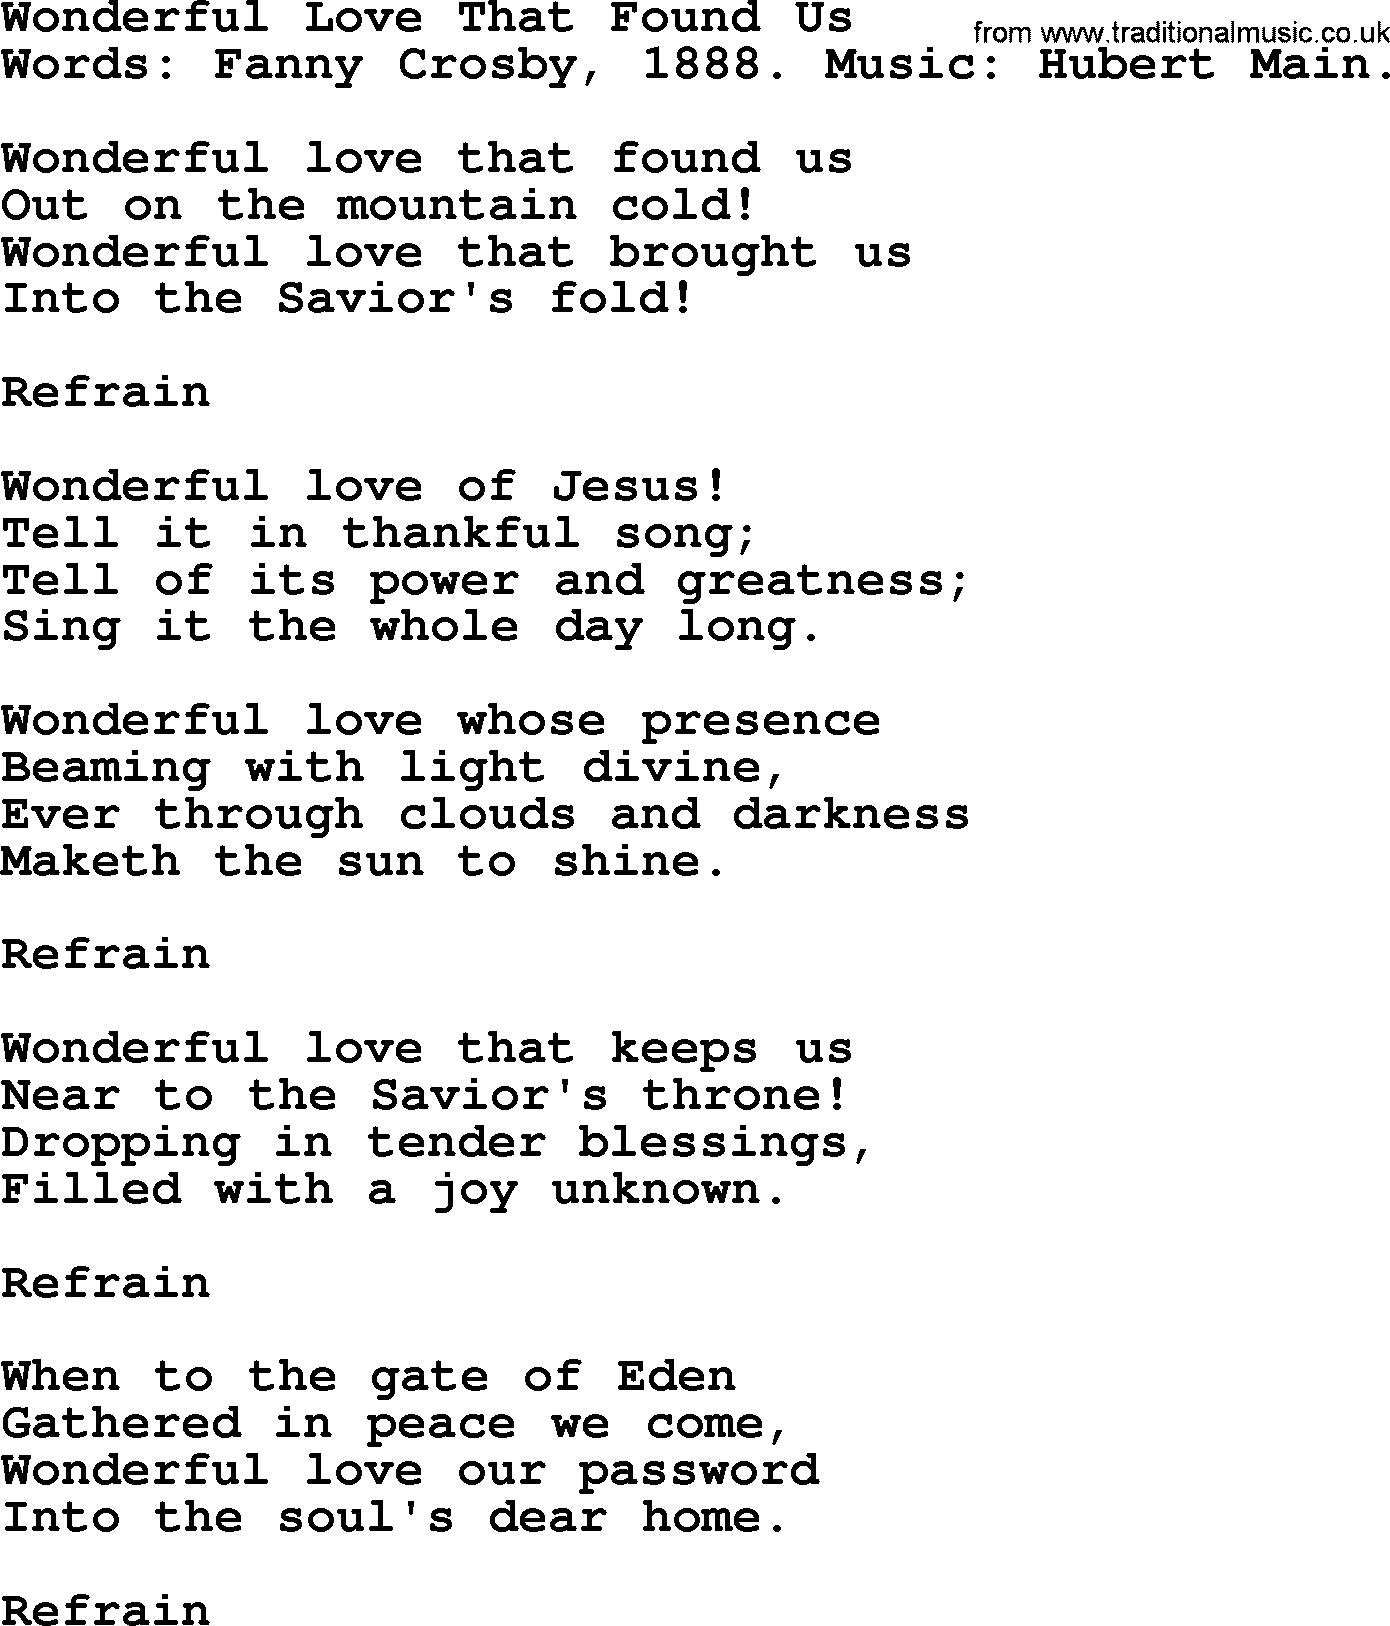 Fanny Crosby song: Wonderful Love That Found Us, lyrics